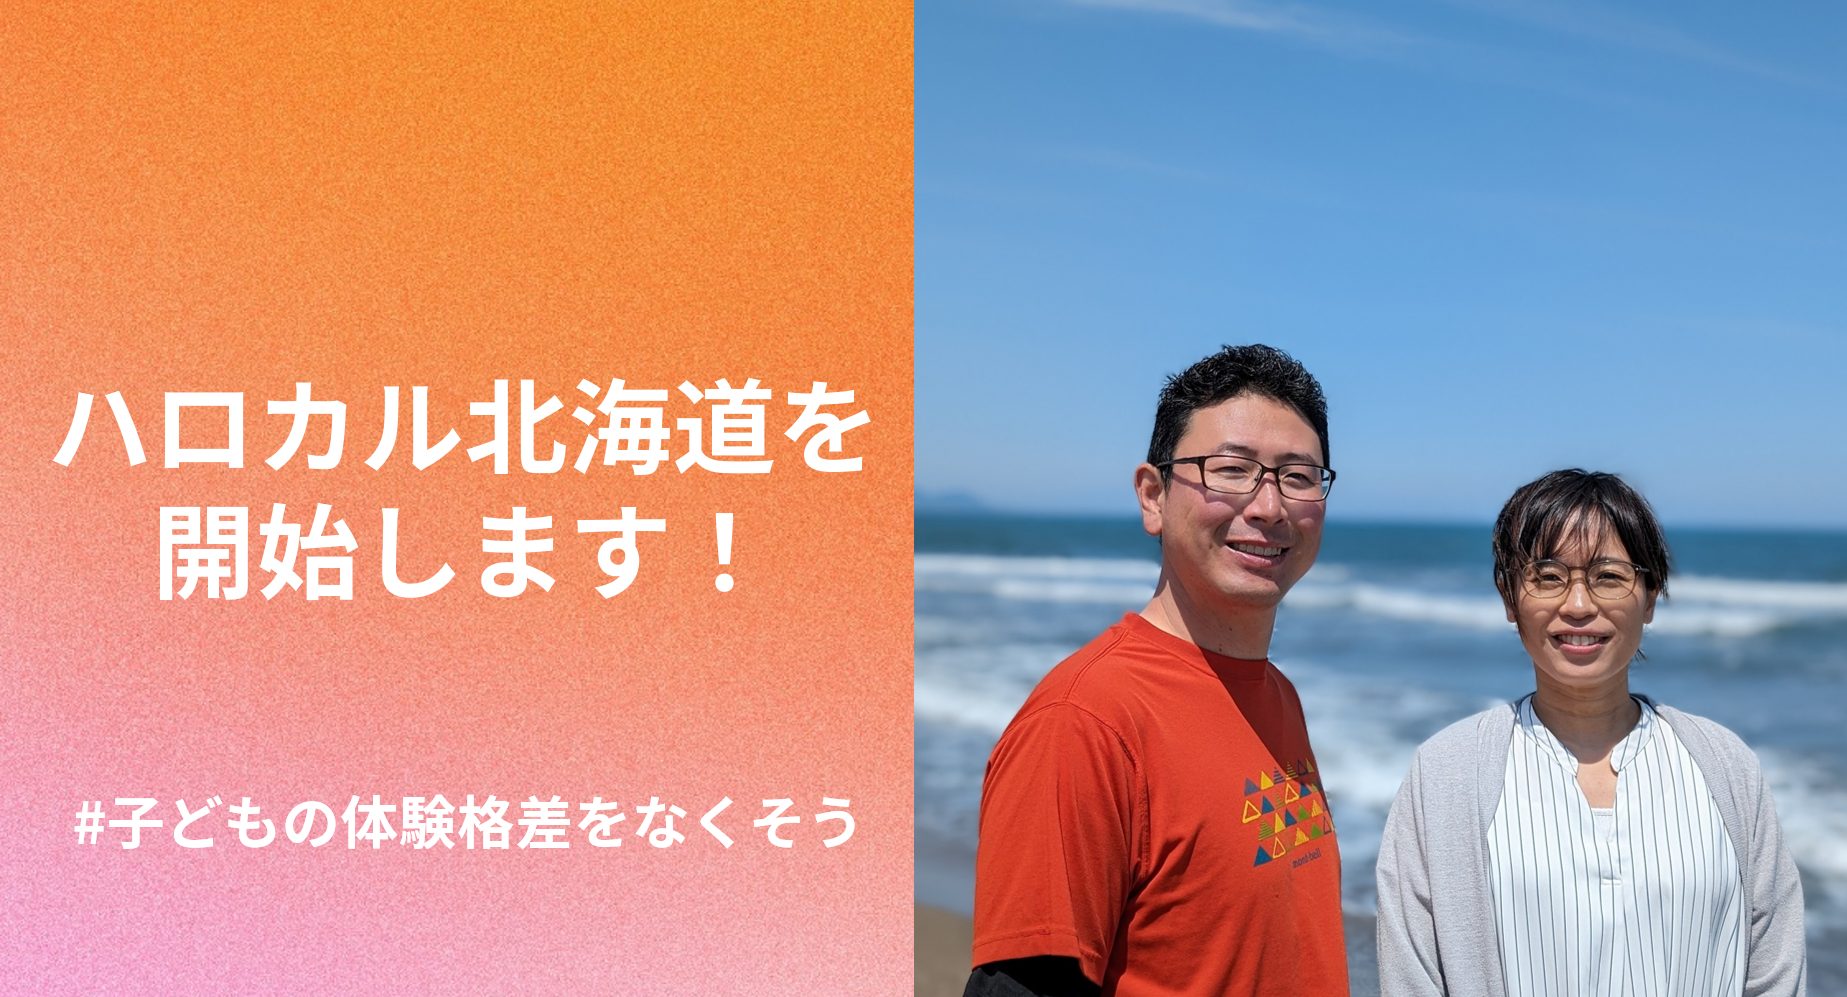 「ハロカル北海道」トライアル事業を開始します！